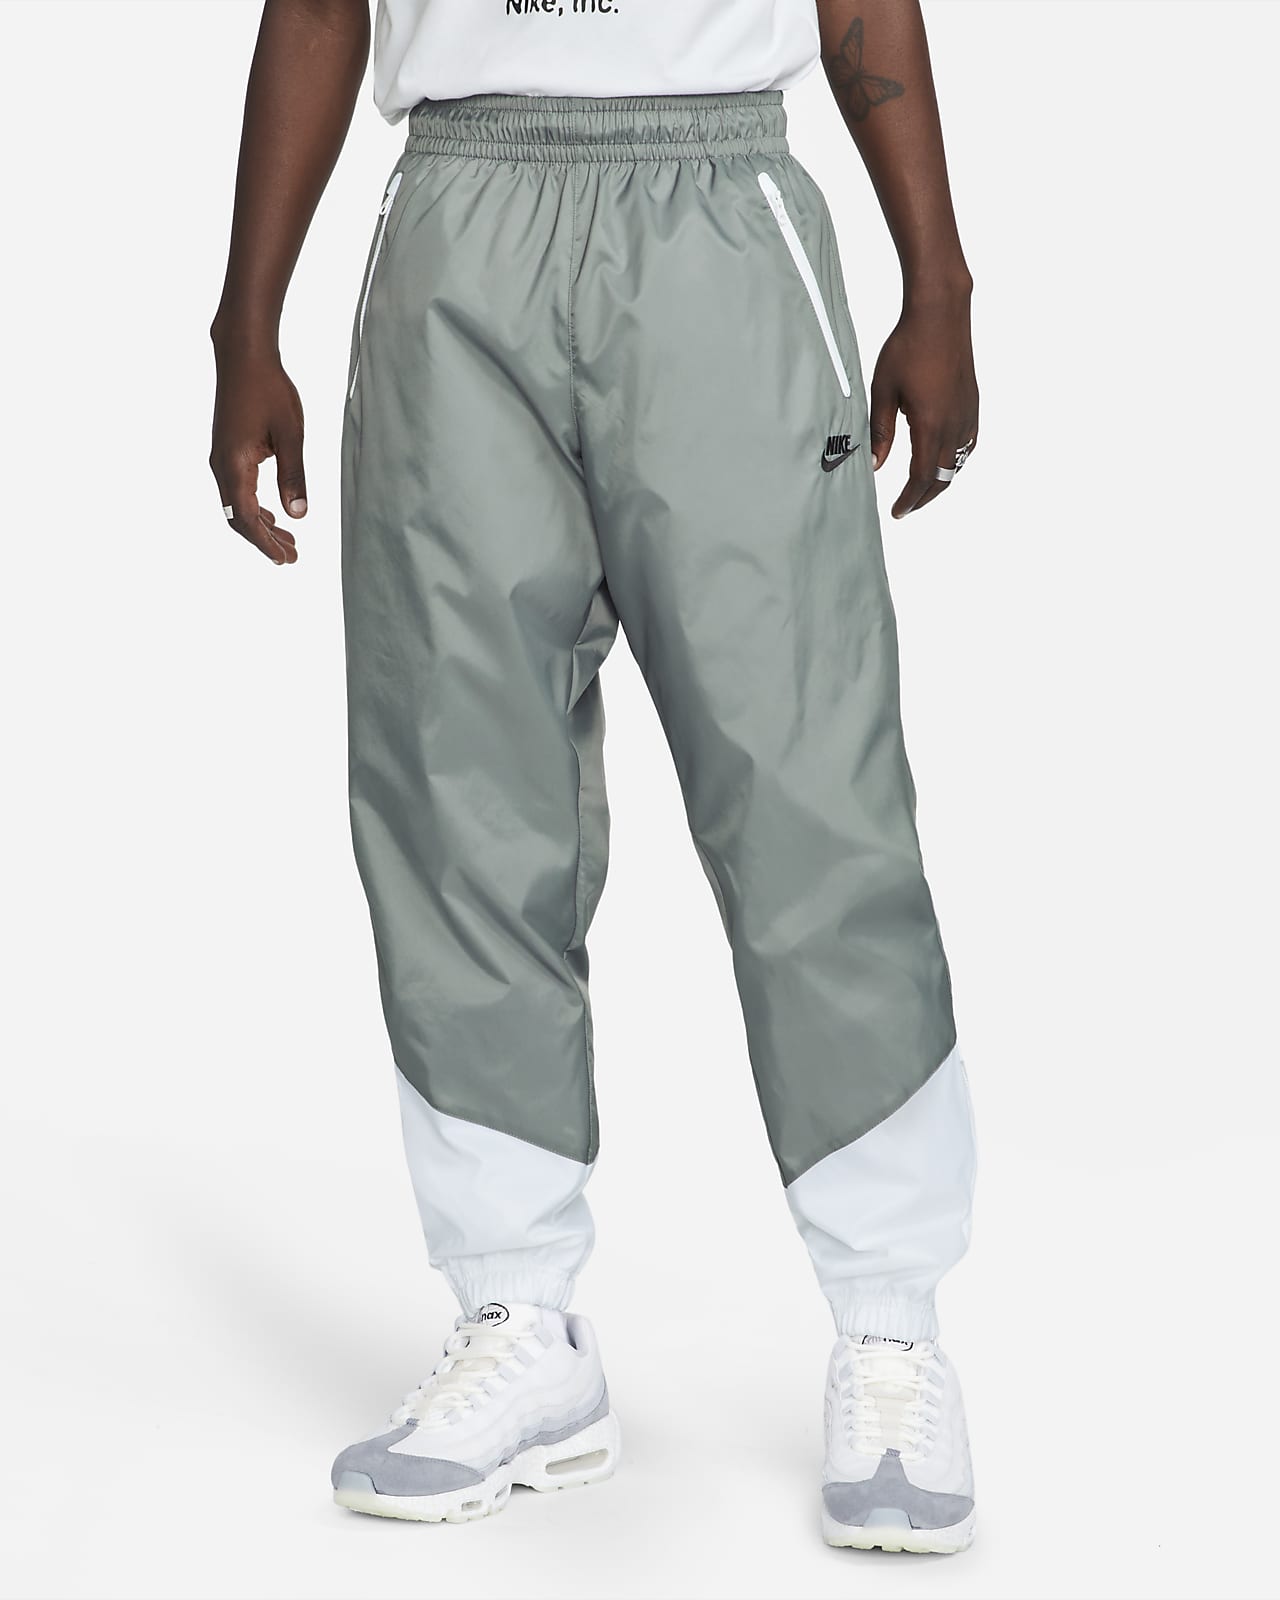 Pánské tkané kalhoty Nike Windrunner s podšívkou